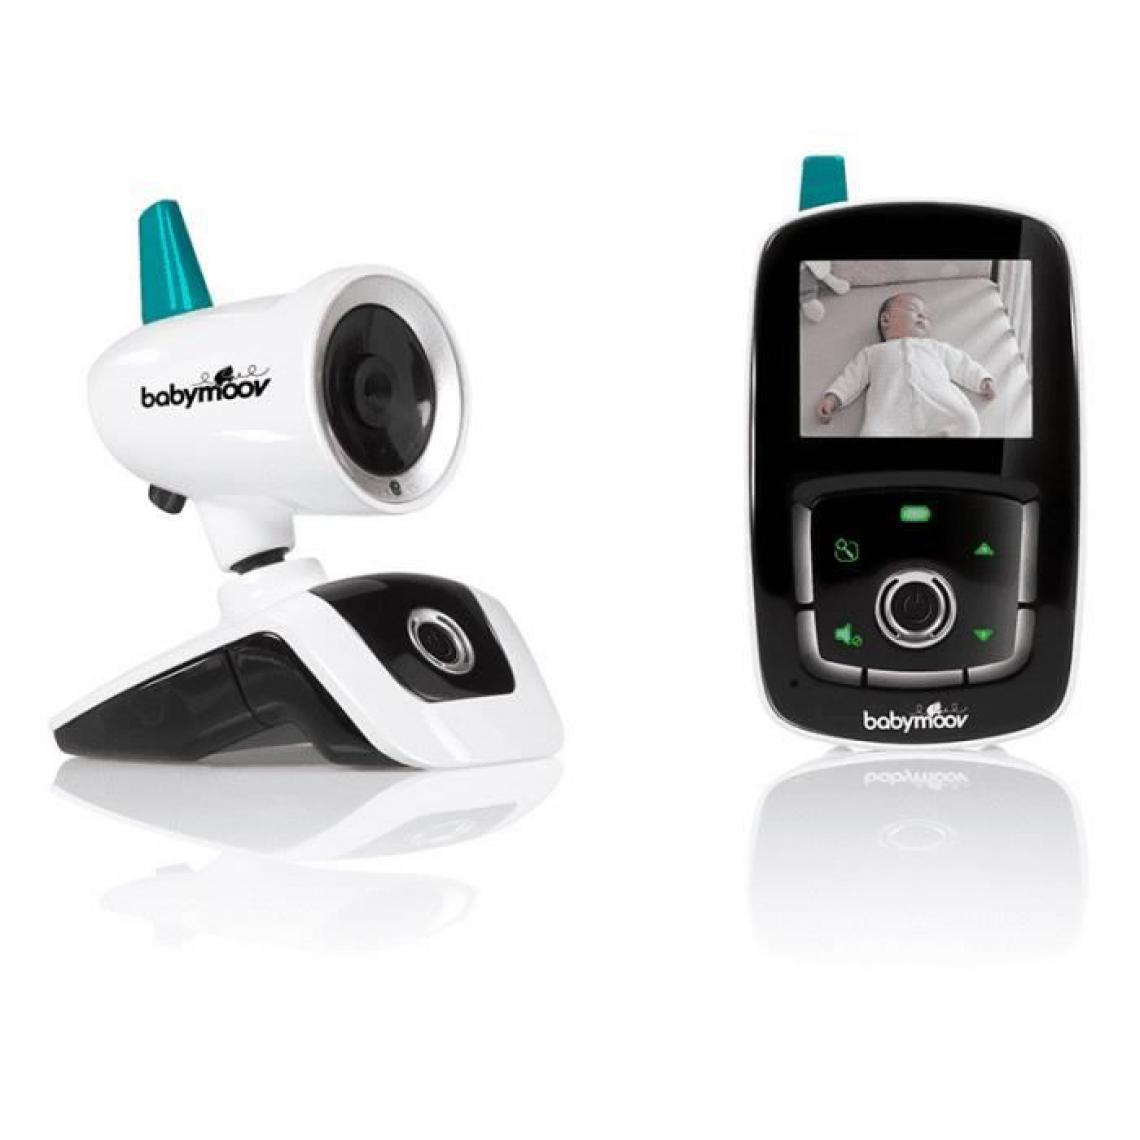 Icaverne - BABY PHONE - ECOUTE BEBE Babyphone Video YOO Care - Caméra Orientable a 360° & Ecran 2,4 - Babyphone connecté